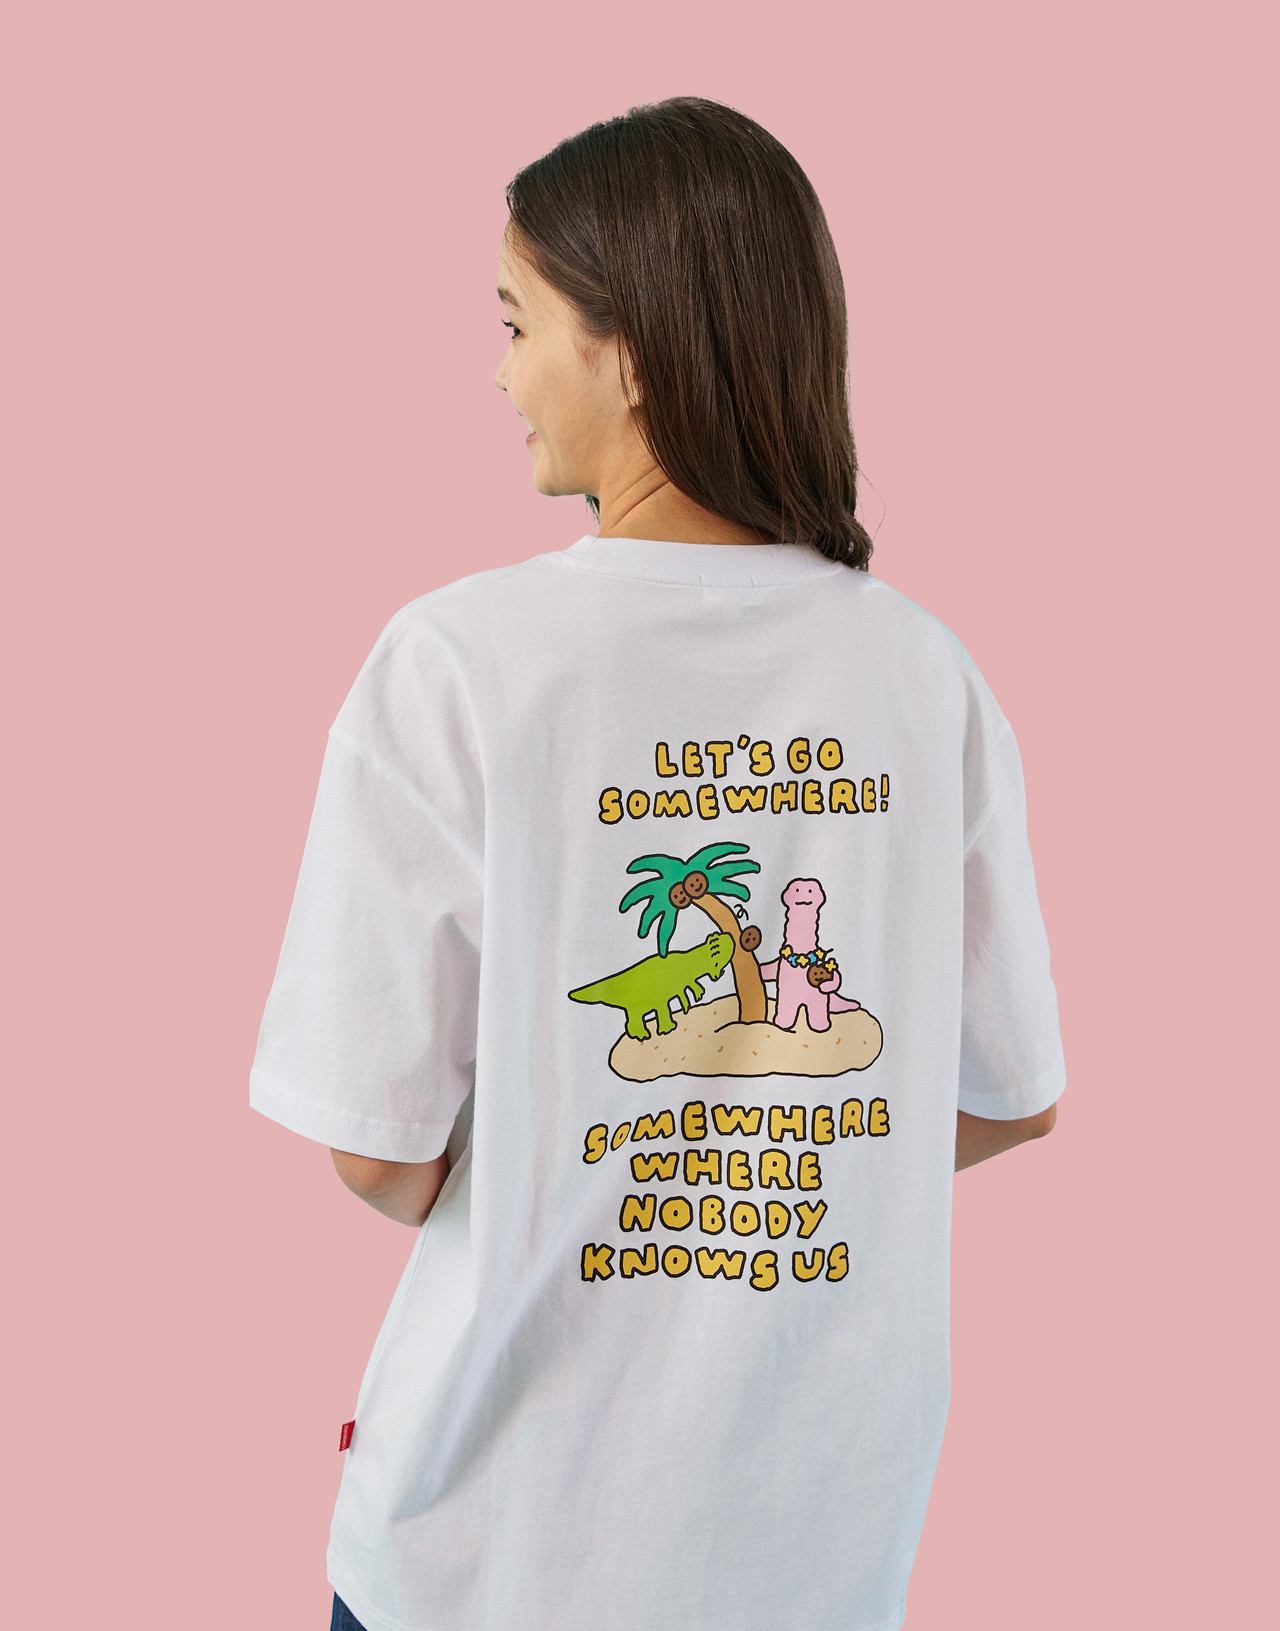 [Joguman X Comoninoz] JOGUMAN PALM TREE 티셔츠